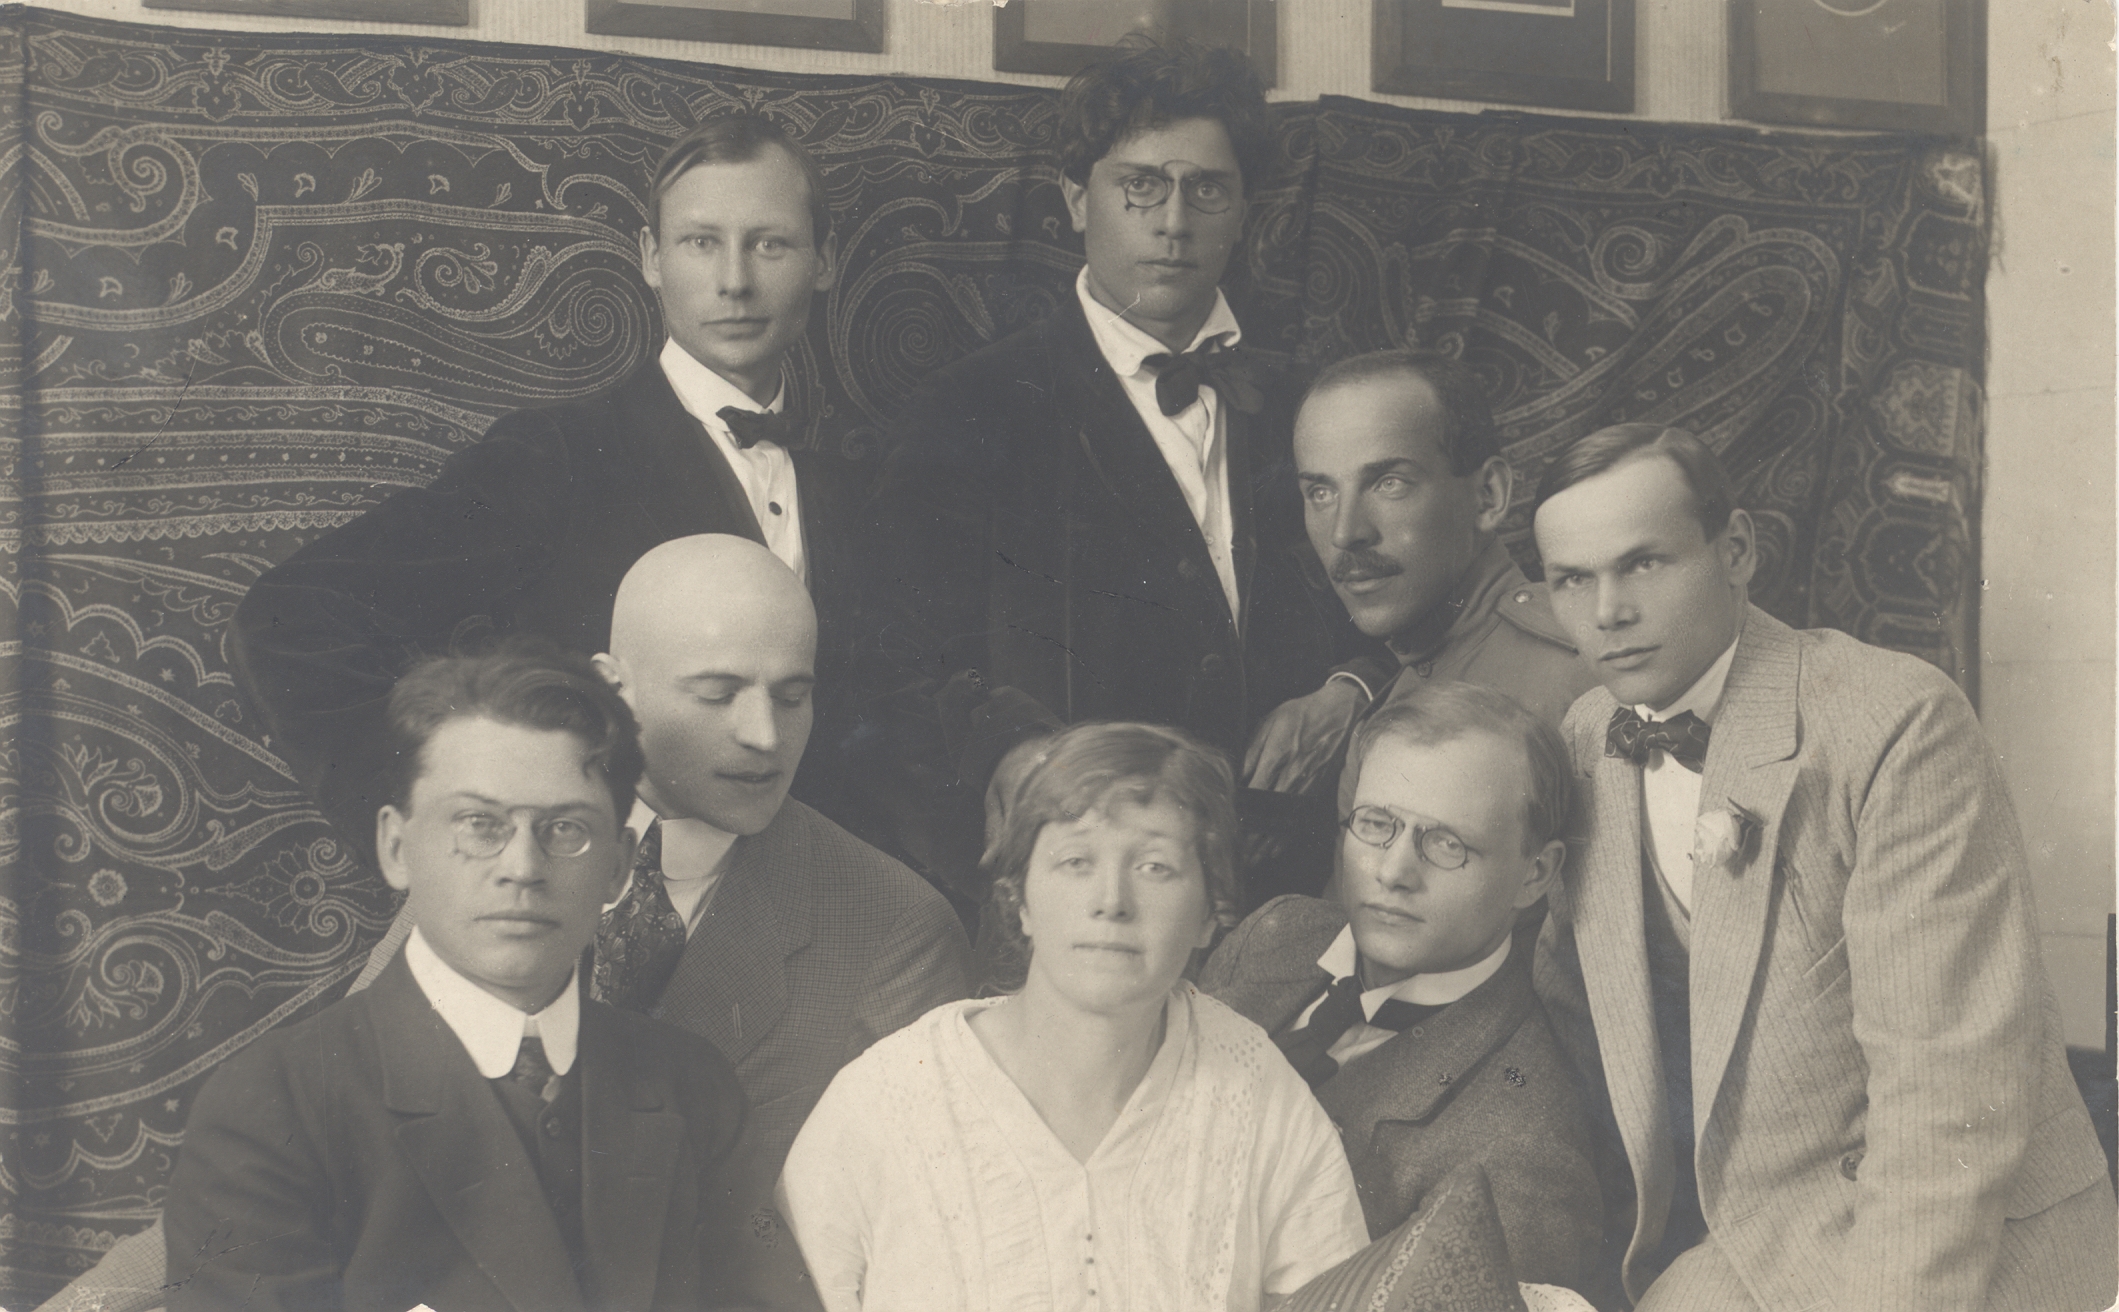 Siuru 1917: p. Aren, o. Krusten, Fr. Tuglas, a. Adson, m. Under, a. Gailit, J. Semper, h. Visnapuu